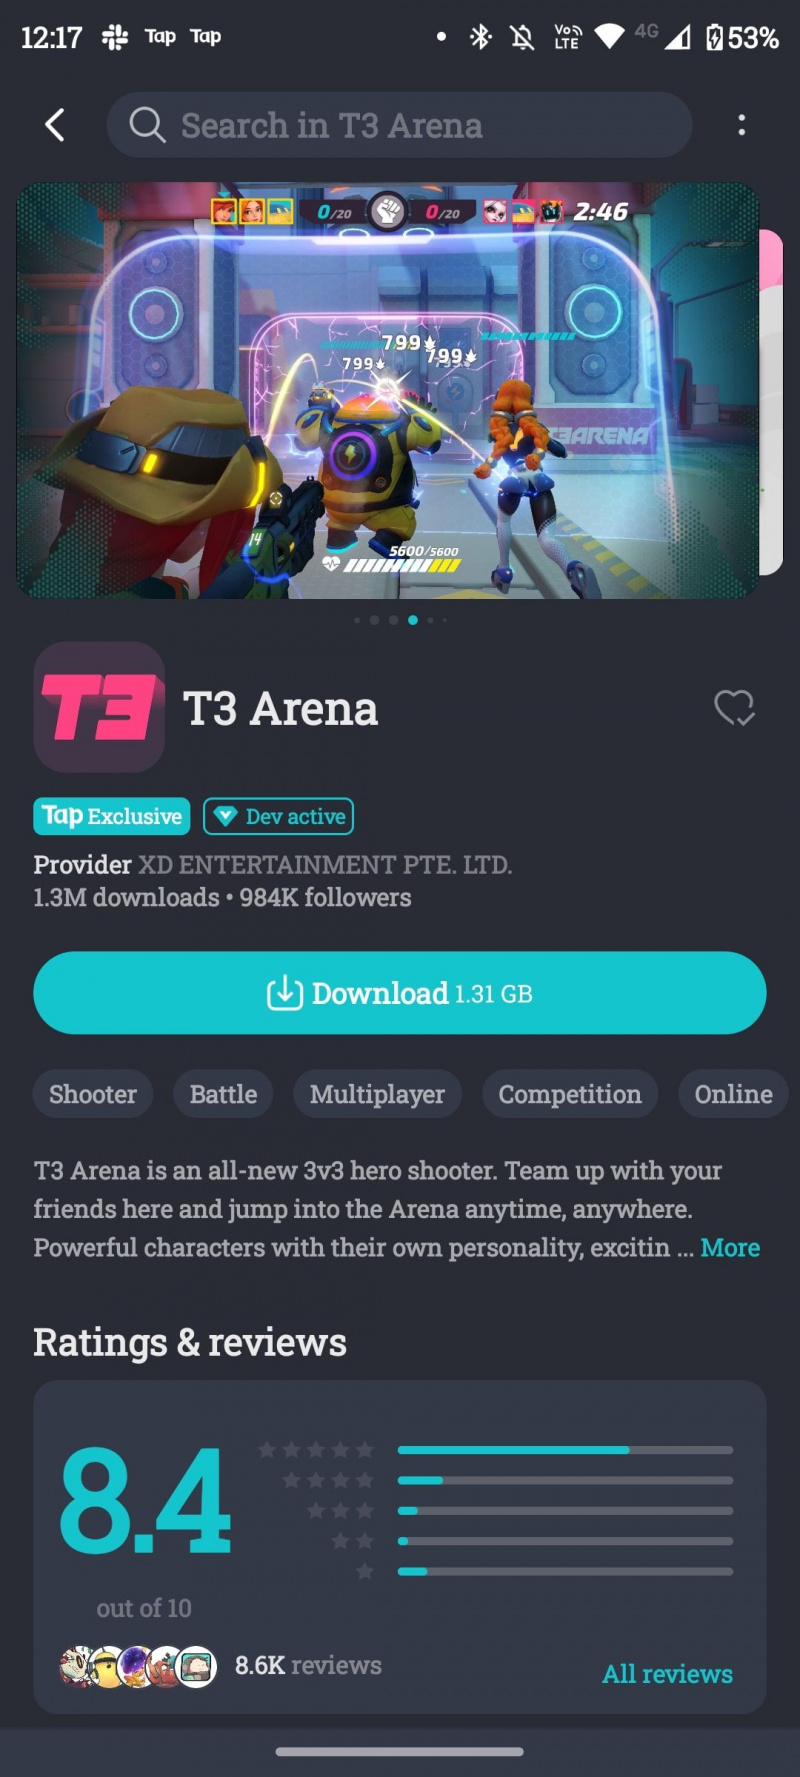   Pagina di download di T3 Arena TapTap